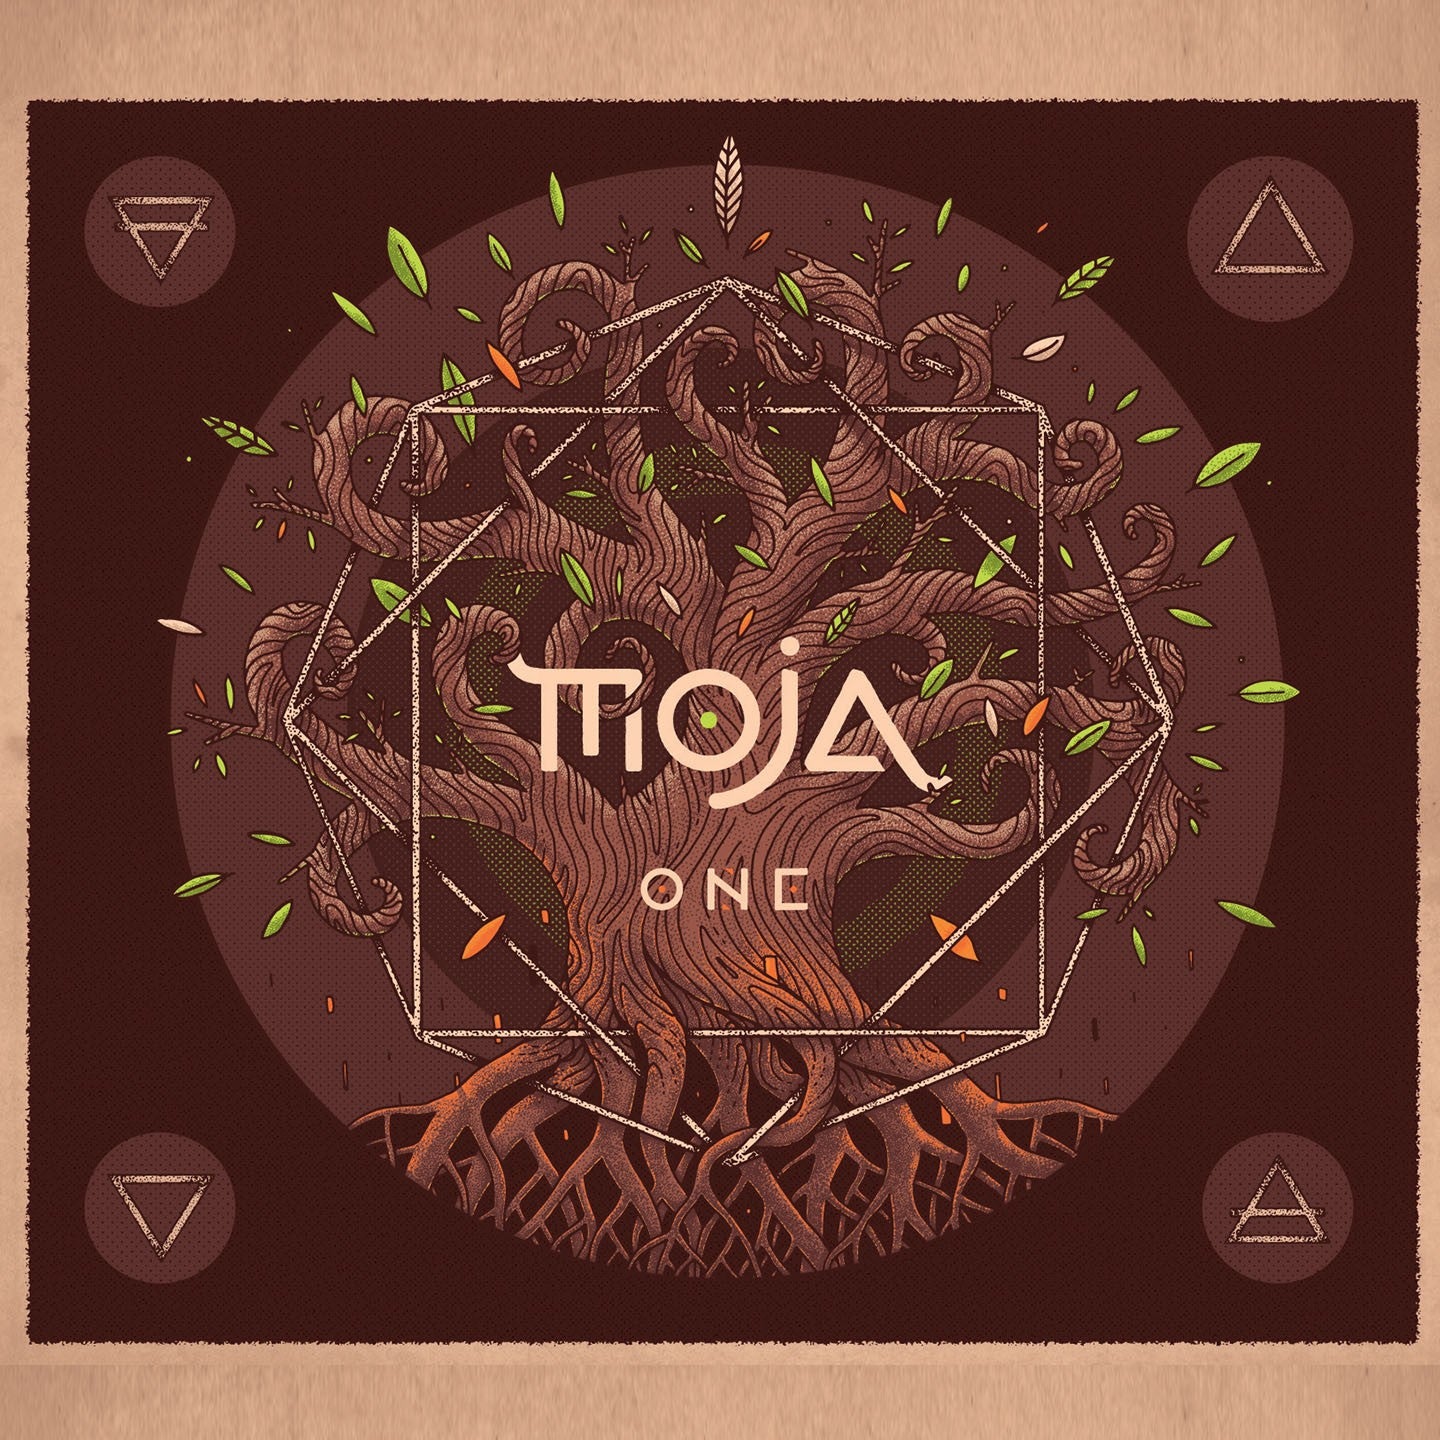 Pochette de : ONE - MOJA (CD)